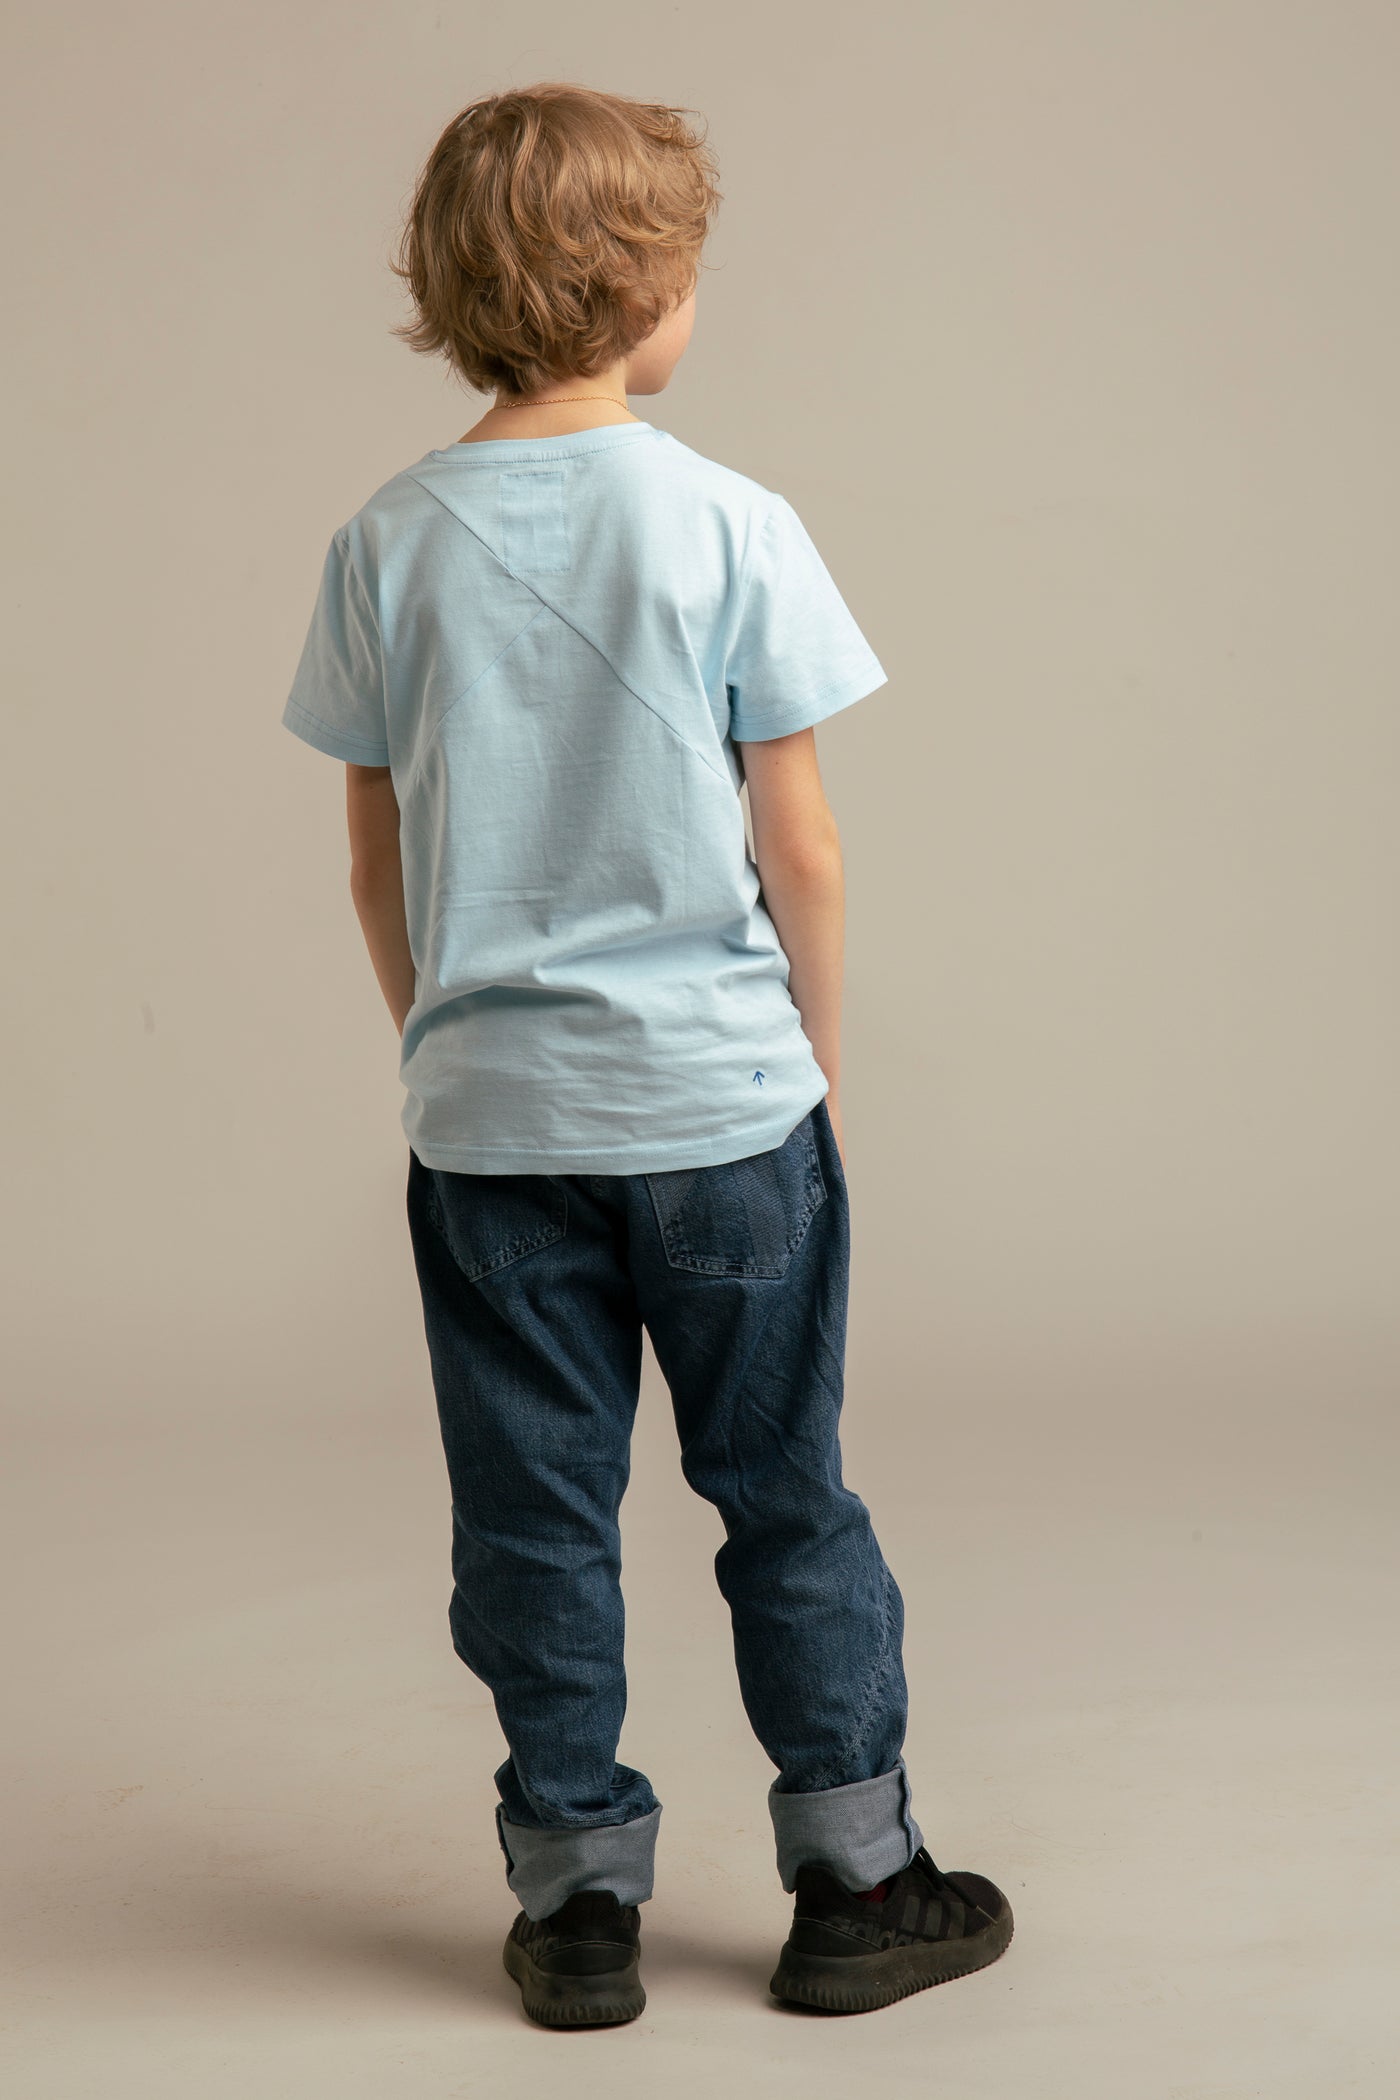 Up-shirt for kids | Blue, Team Estonia